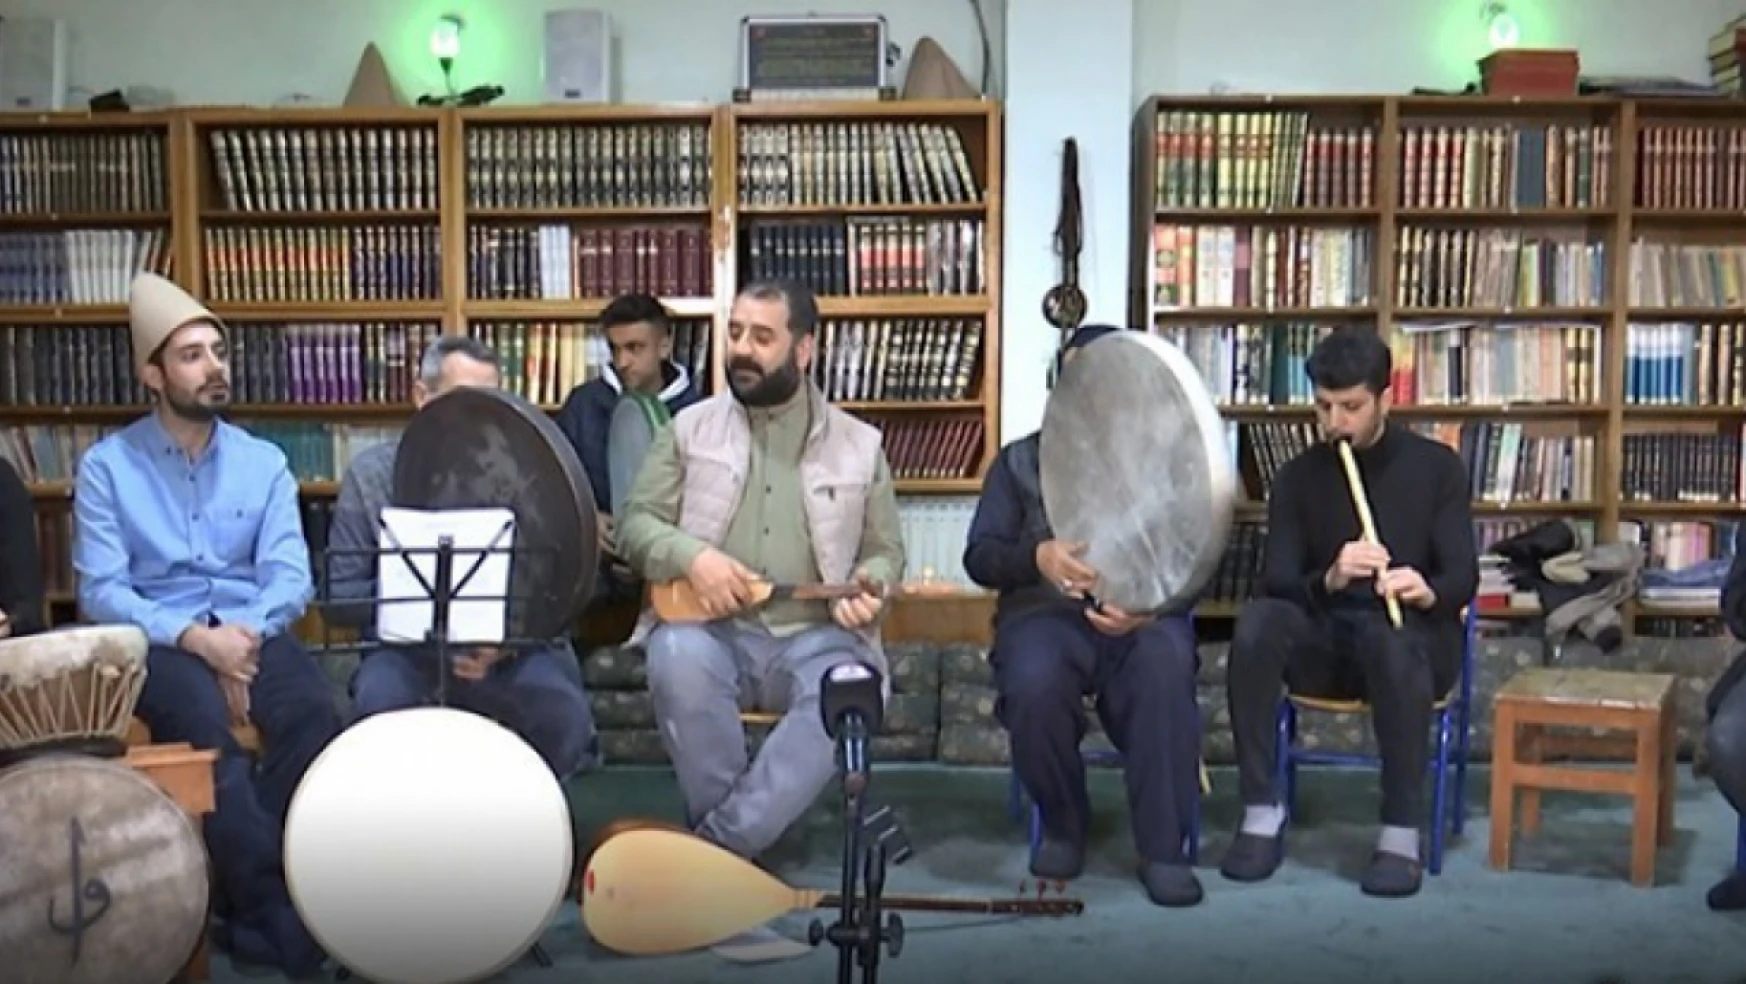 Harput tasavvuf musikisi geleneği devam ediyor